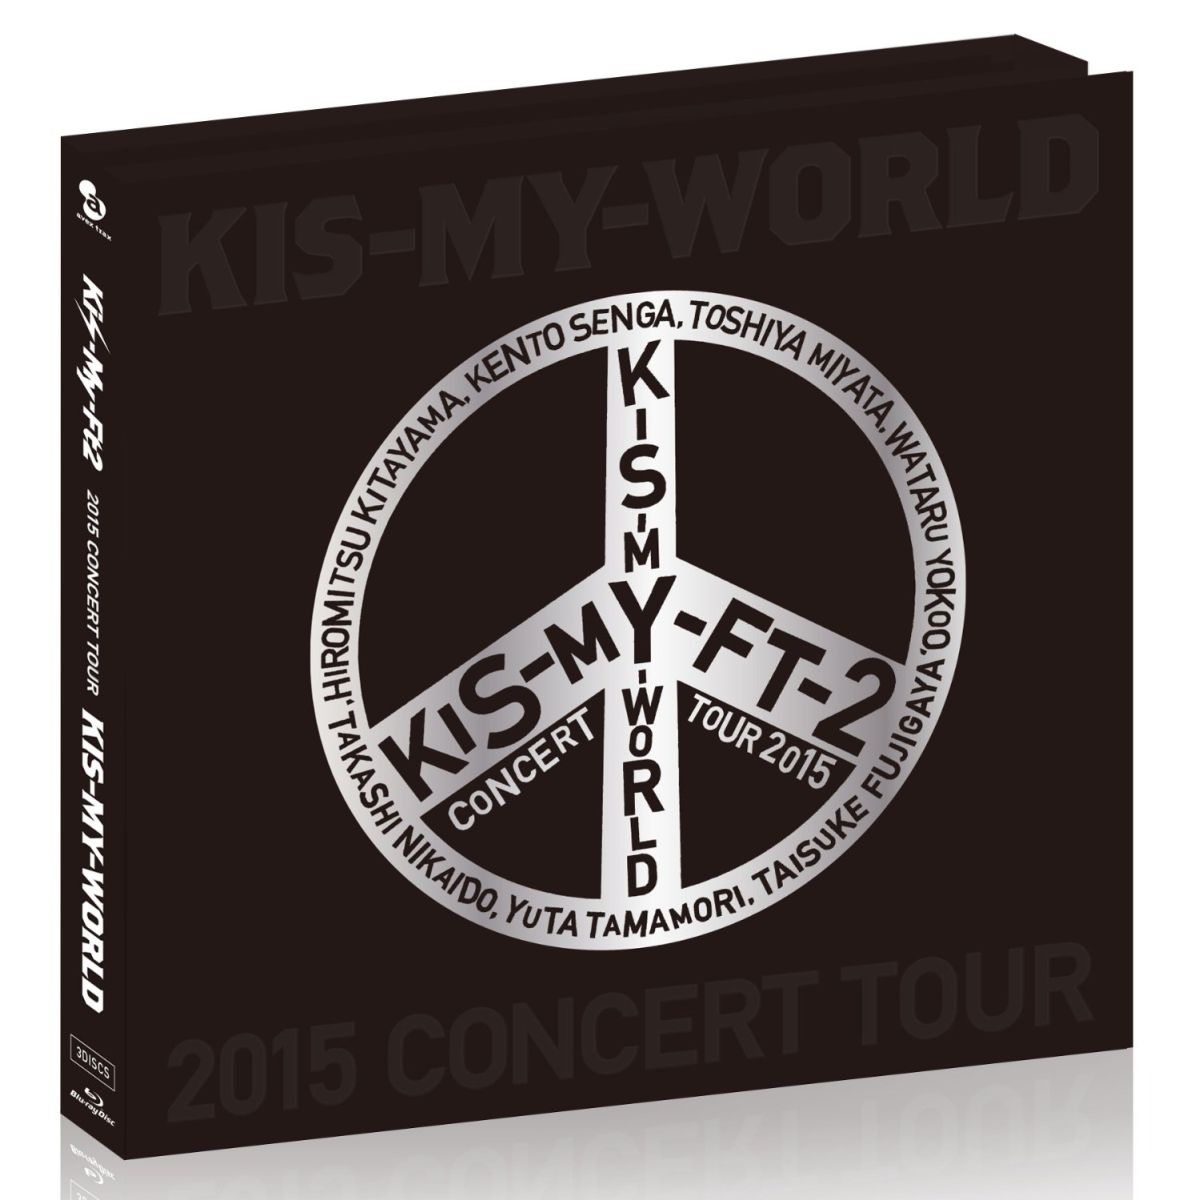 楽天ブックス 15 Concert Tour Kis My World Blu Ray盤 Kis My Ft2 Dvd